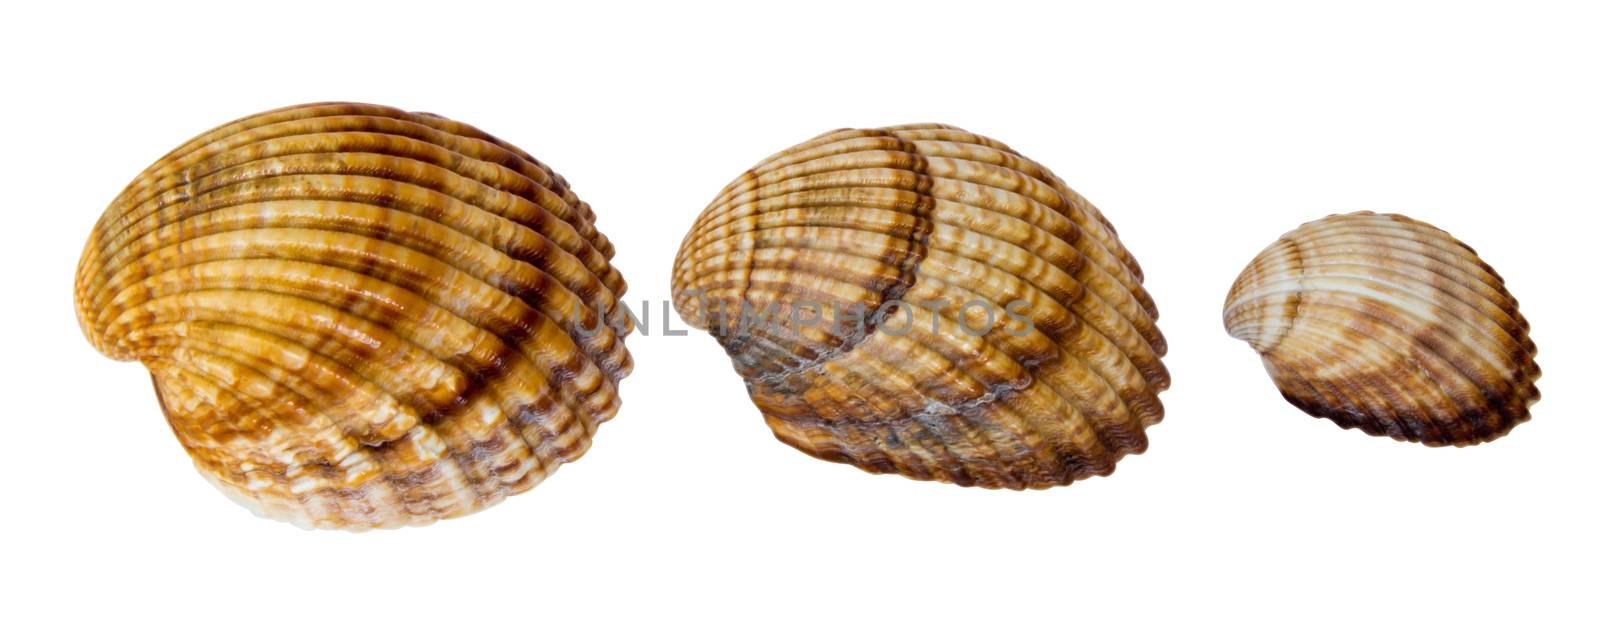 Sea shells by Venakr